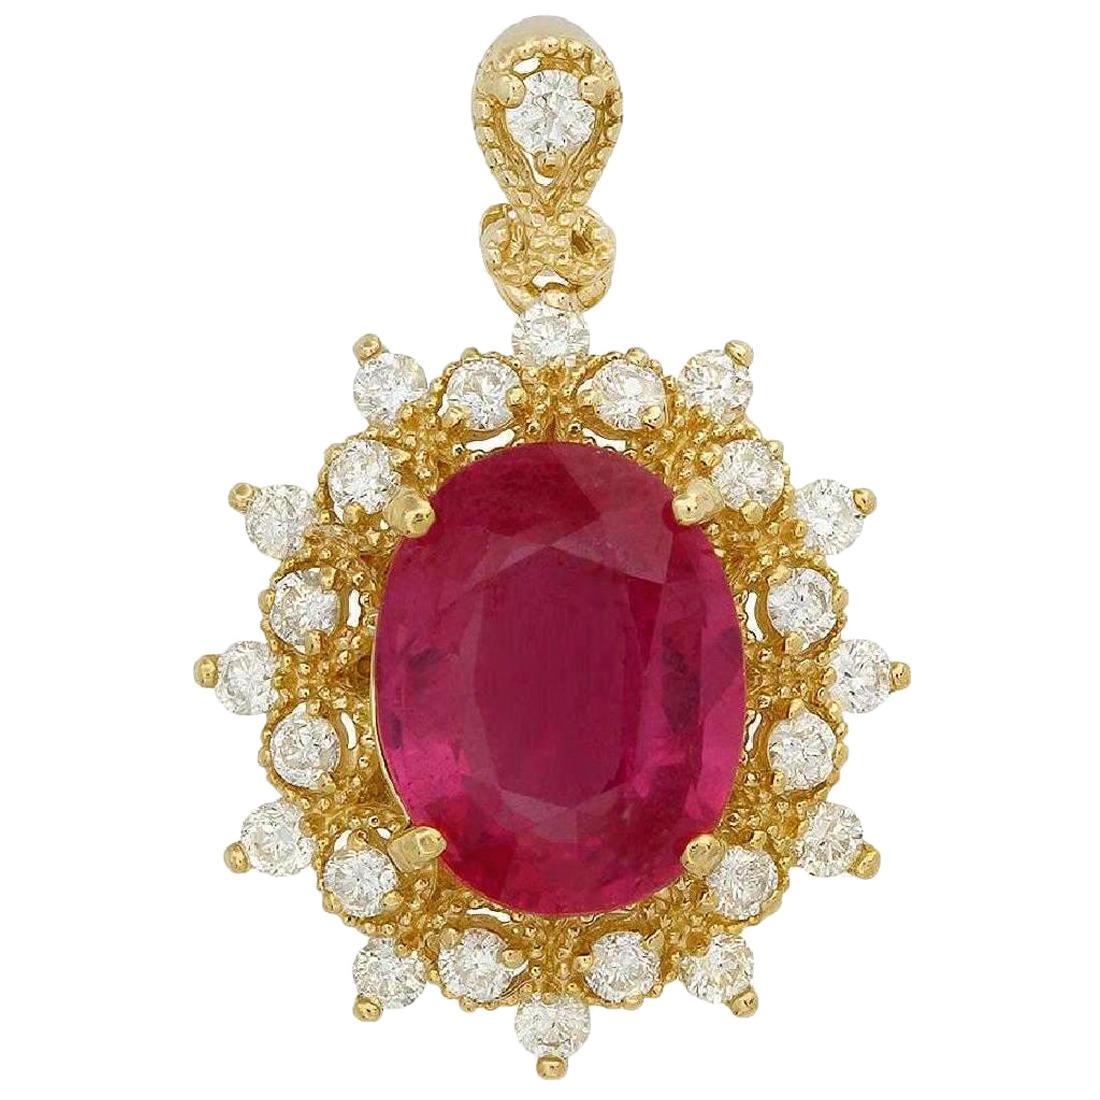 Collier en or jaune massif 14 carats avec rubis rouge naturel de 6,70 carats et diamants naturels